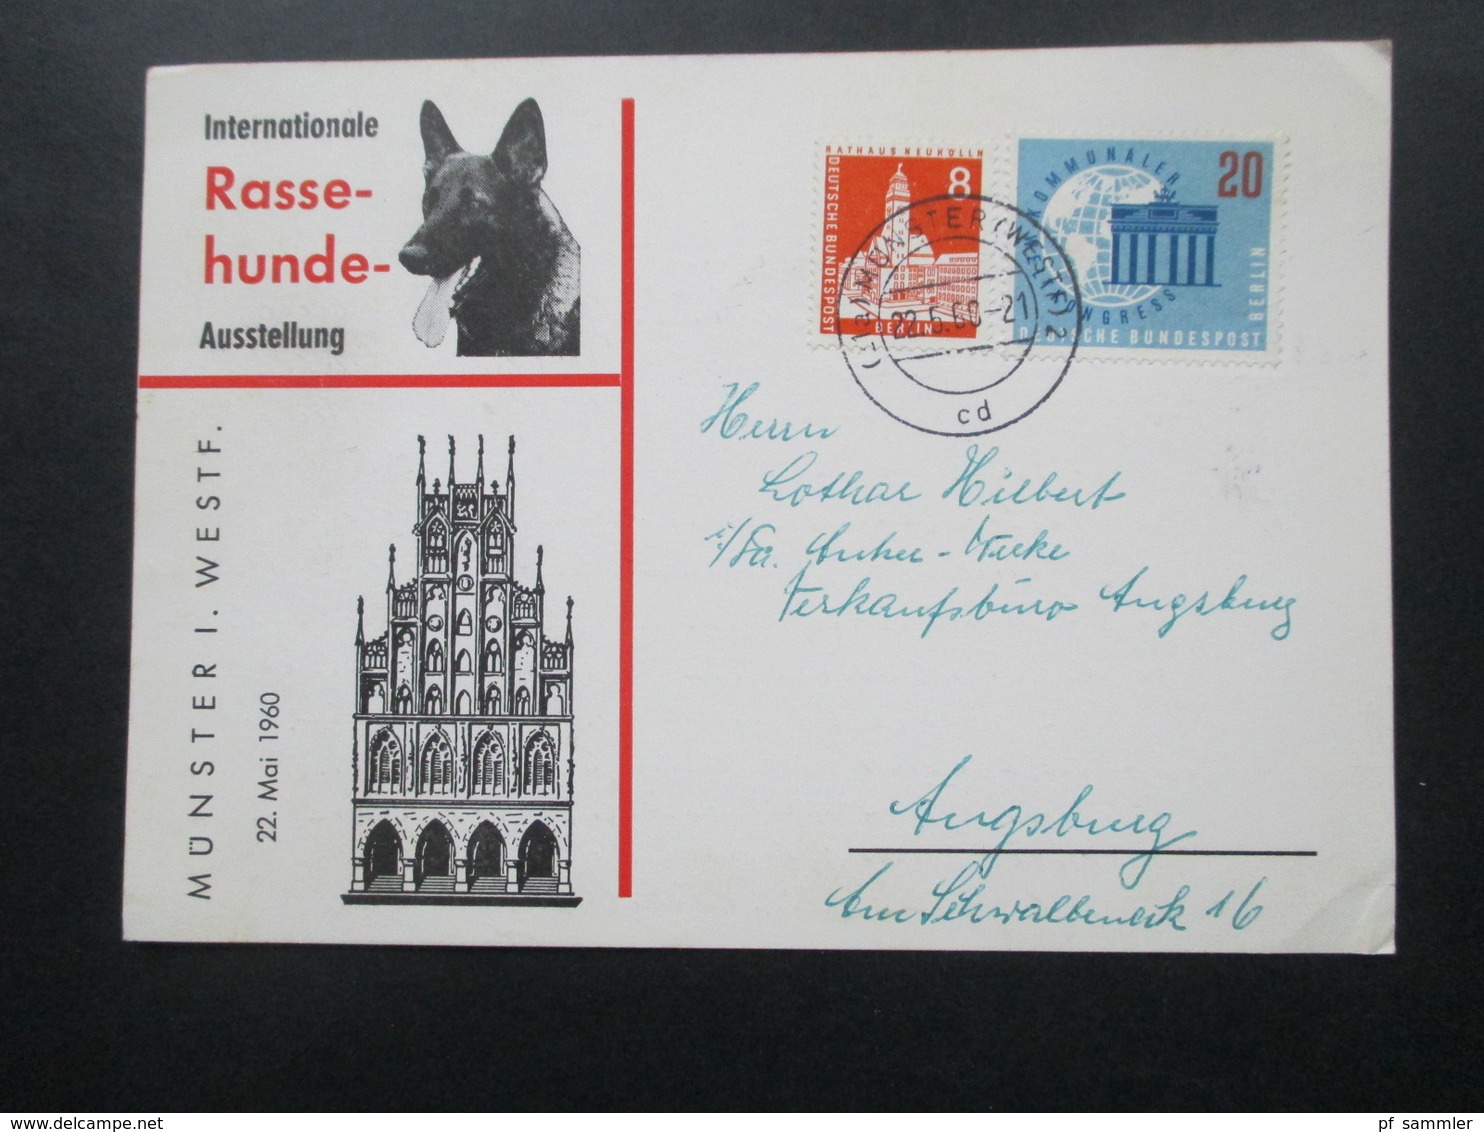 Sonderkarte Internationale Rasse Hunde Ausstellung Münster Westfalen Mit Berlin Marken! Nach Ausgburg Gesendet / Bedarf - Brieven En Documenten